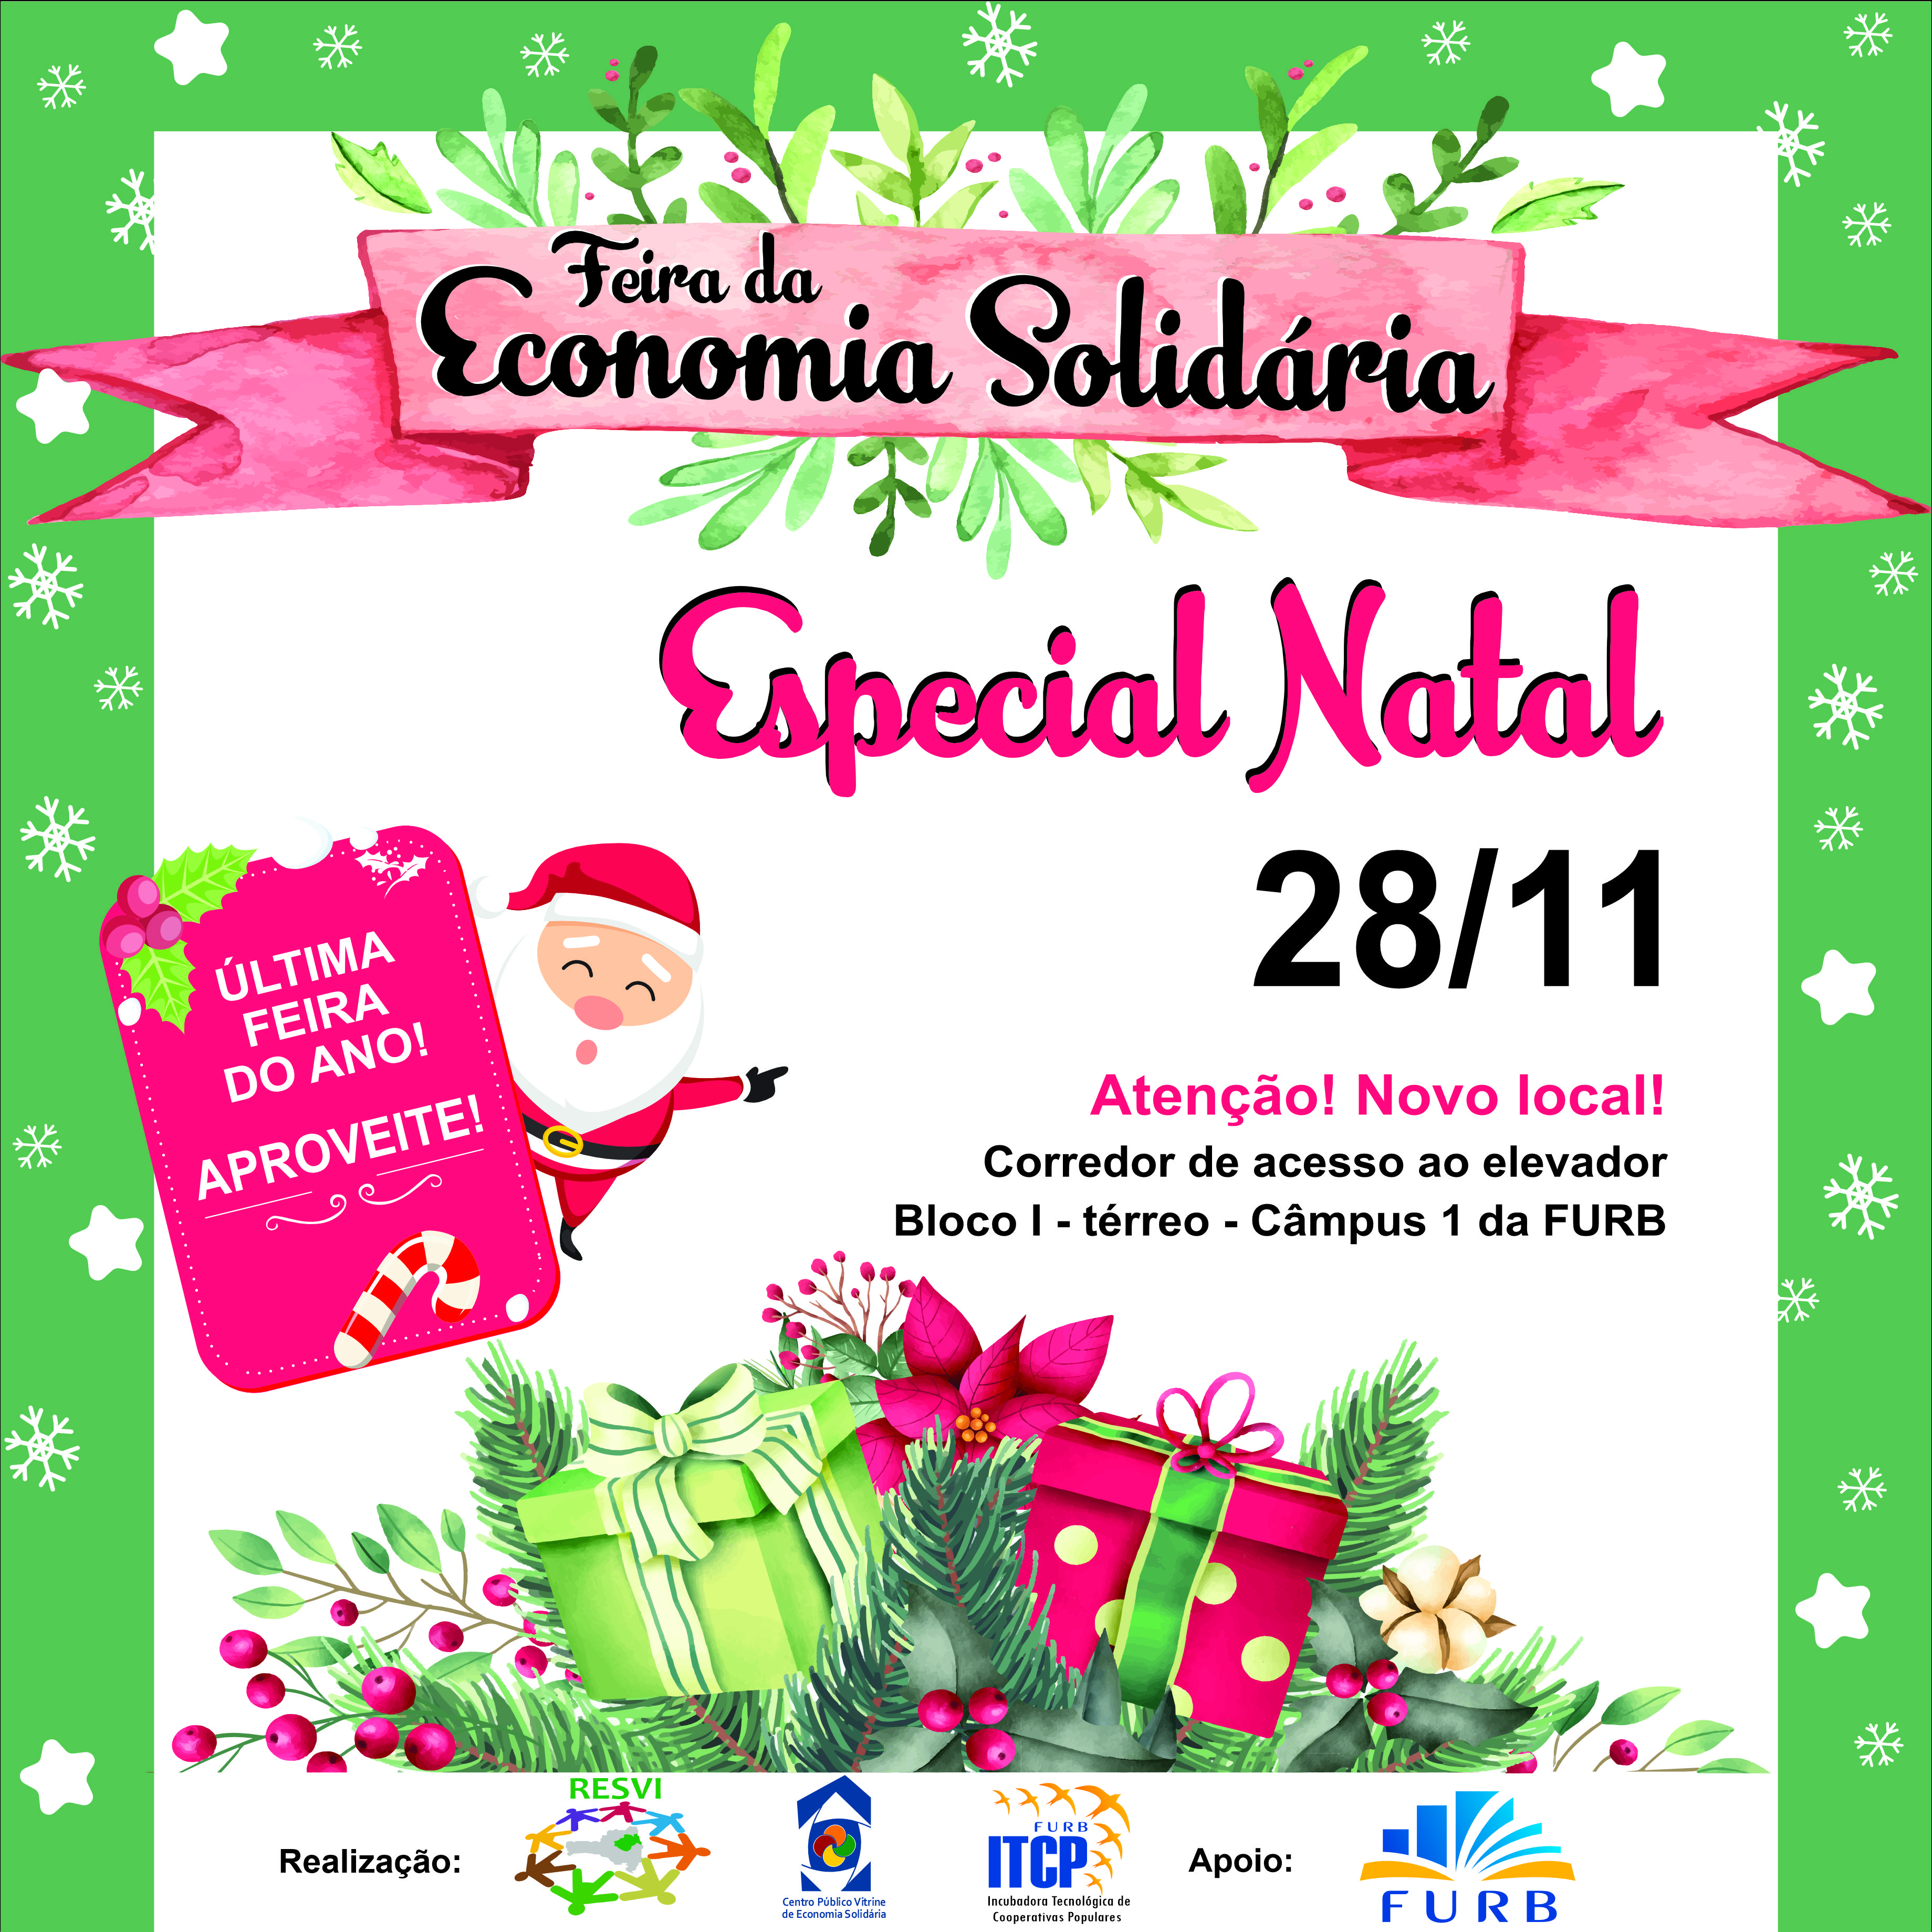 Imagem mostra um Papai Noel com presentes de natal para anunciar a última edição da Feira de Economia Solidária em 2023